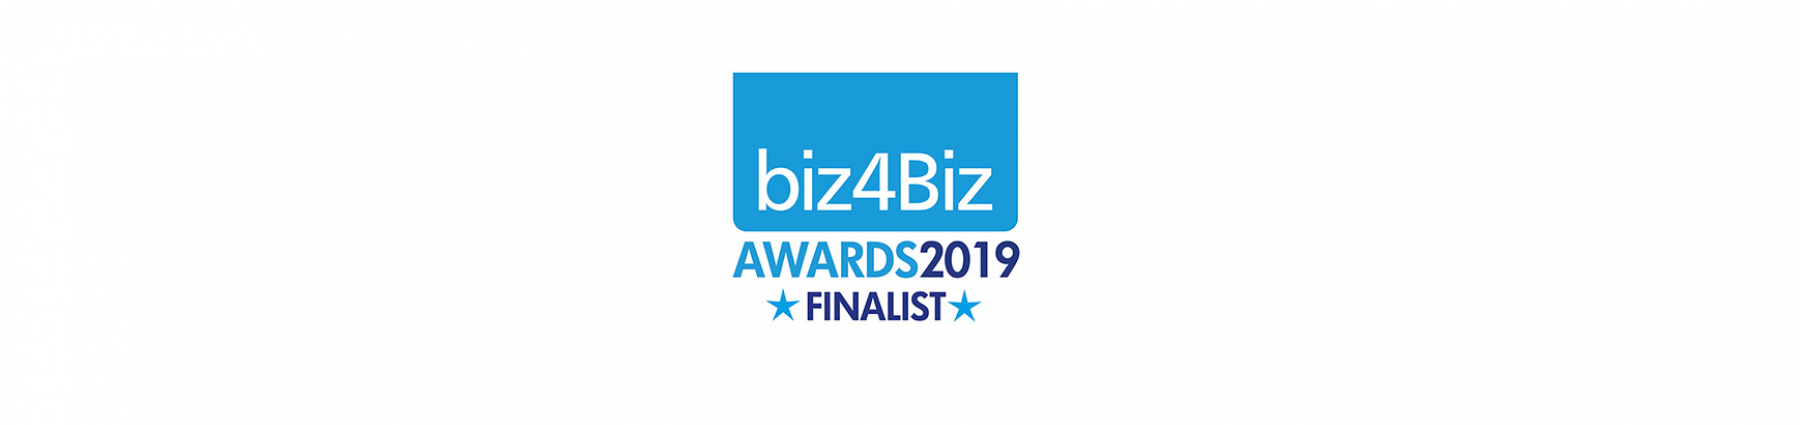 Biz4Biz Awards 2019